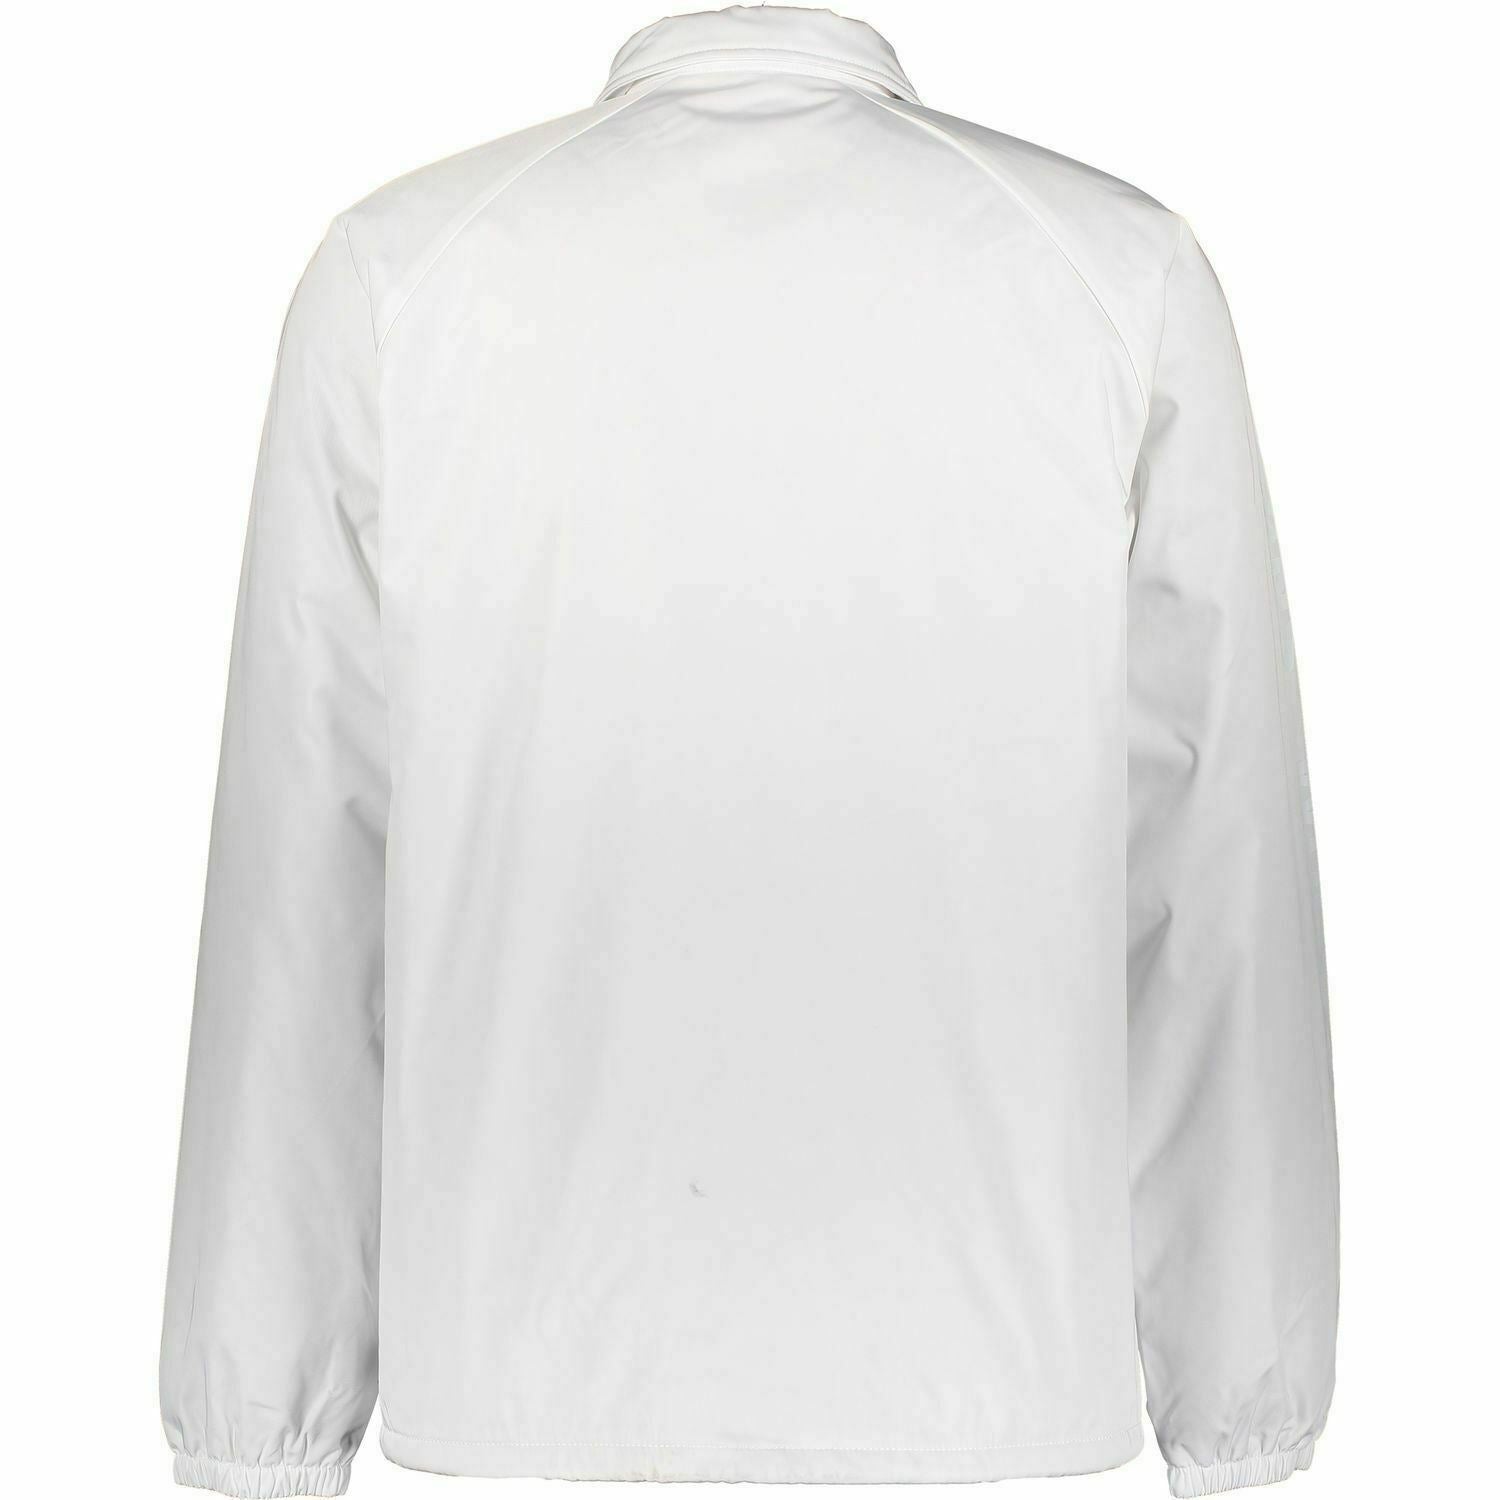 VANS Men's TORREY DELUXE Jacket, White, size XS